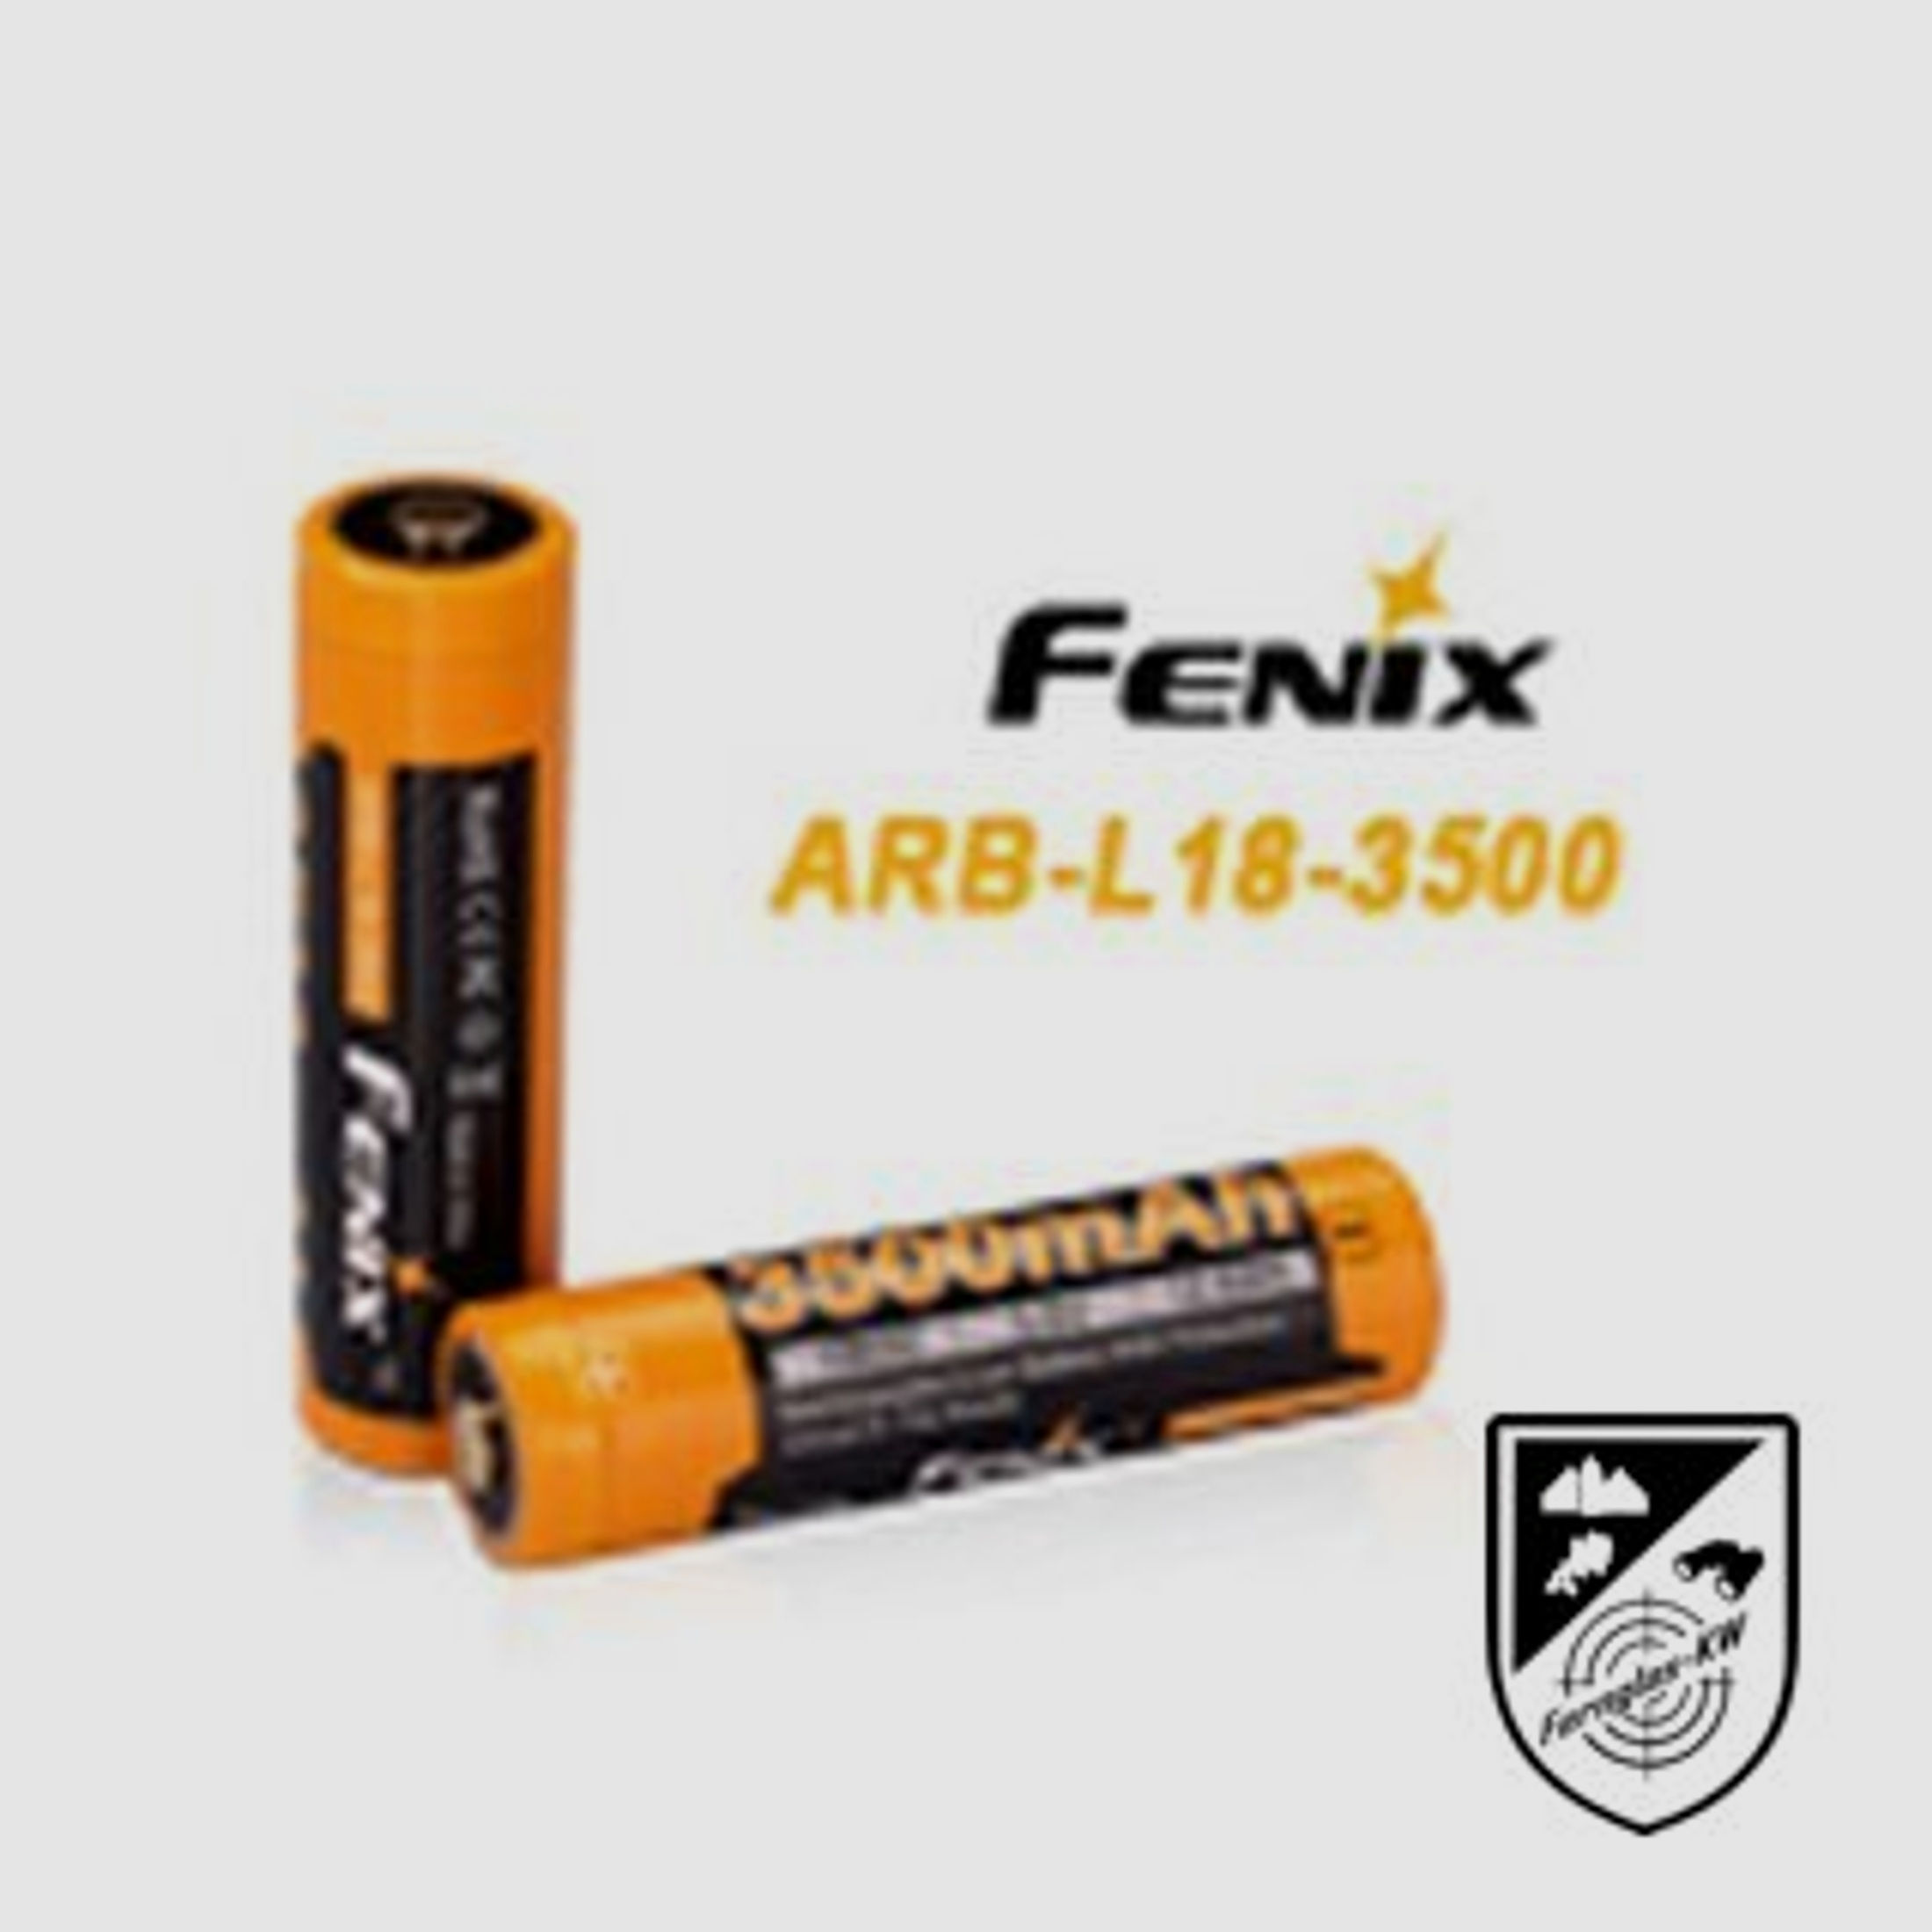 1 Fenix FEARBL18 ARB-L18-3500 mAh 18650 LiIon Akku geschützt